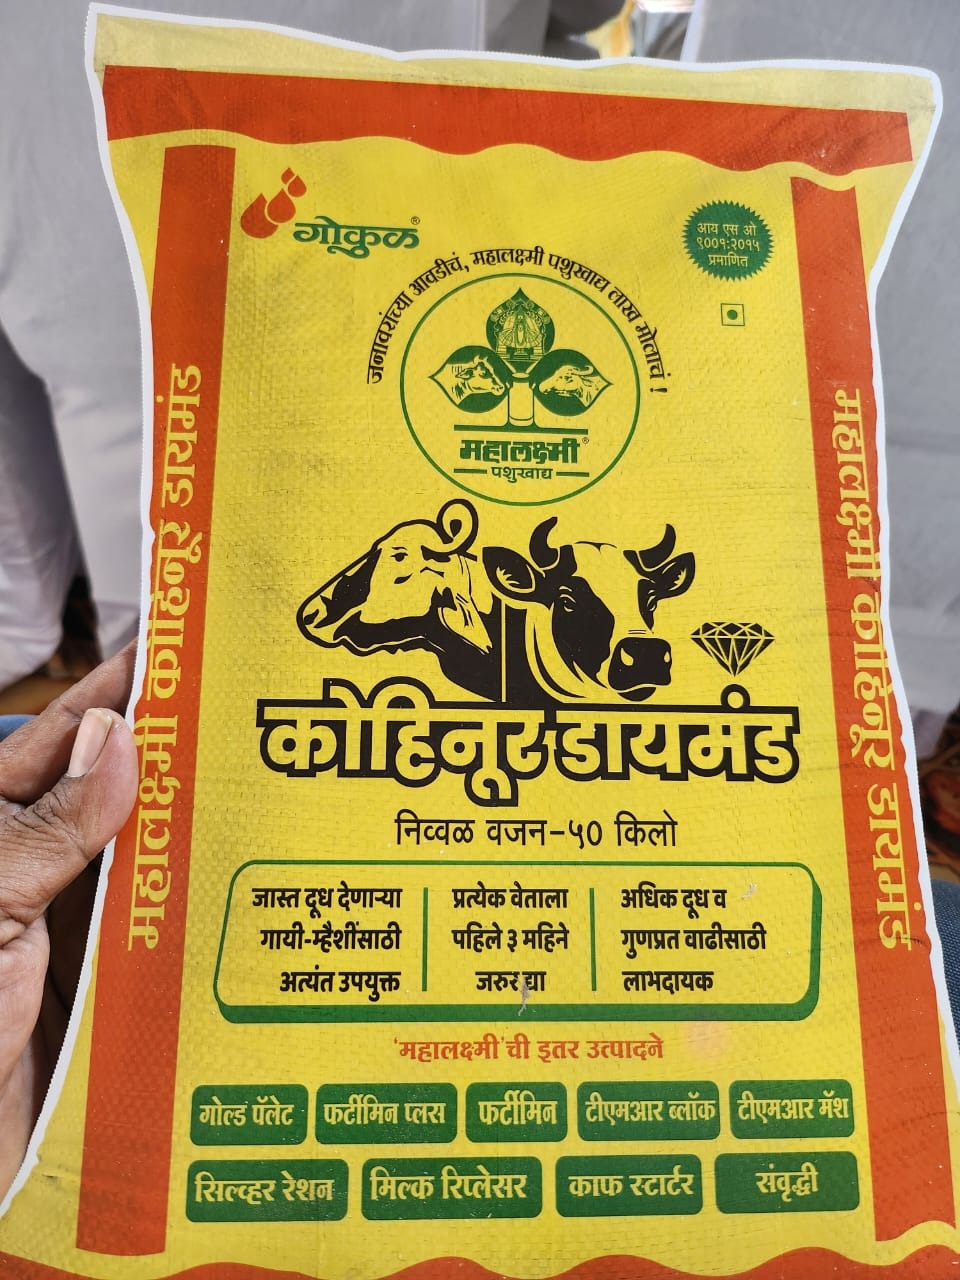 Sales launch of Gokuls new animal feed Mahalakshmi Kohinoor Diamond